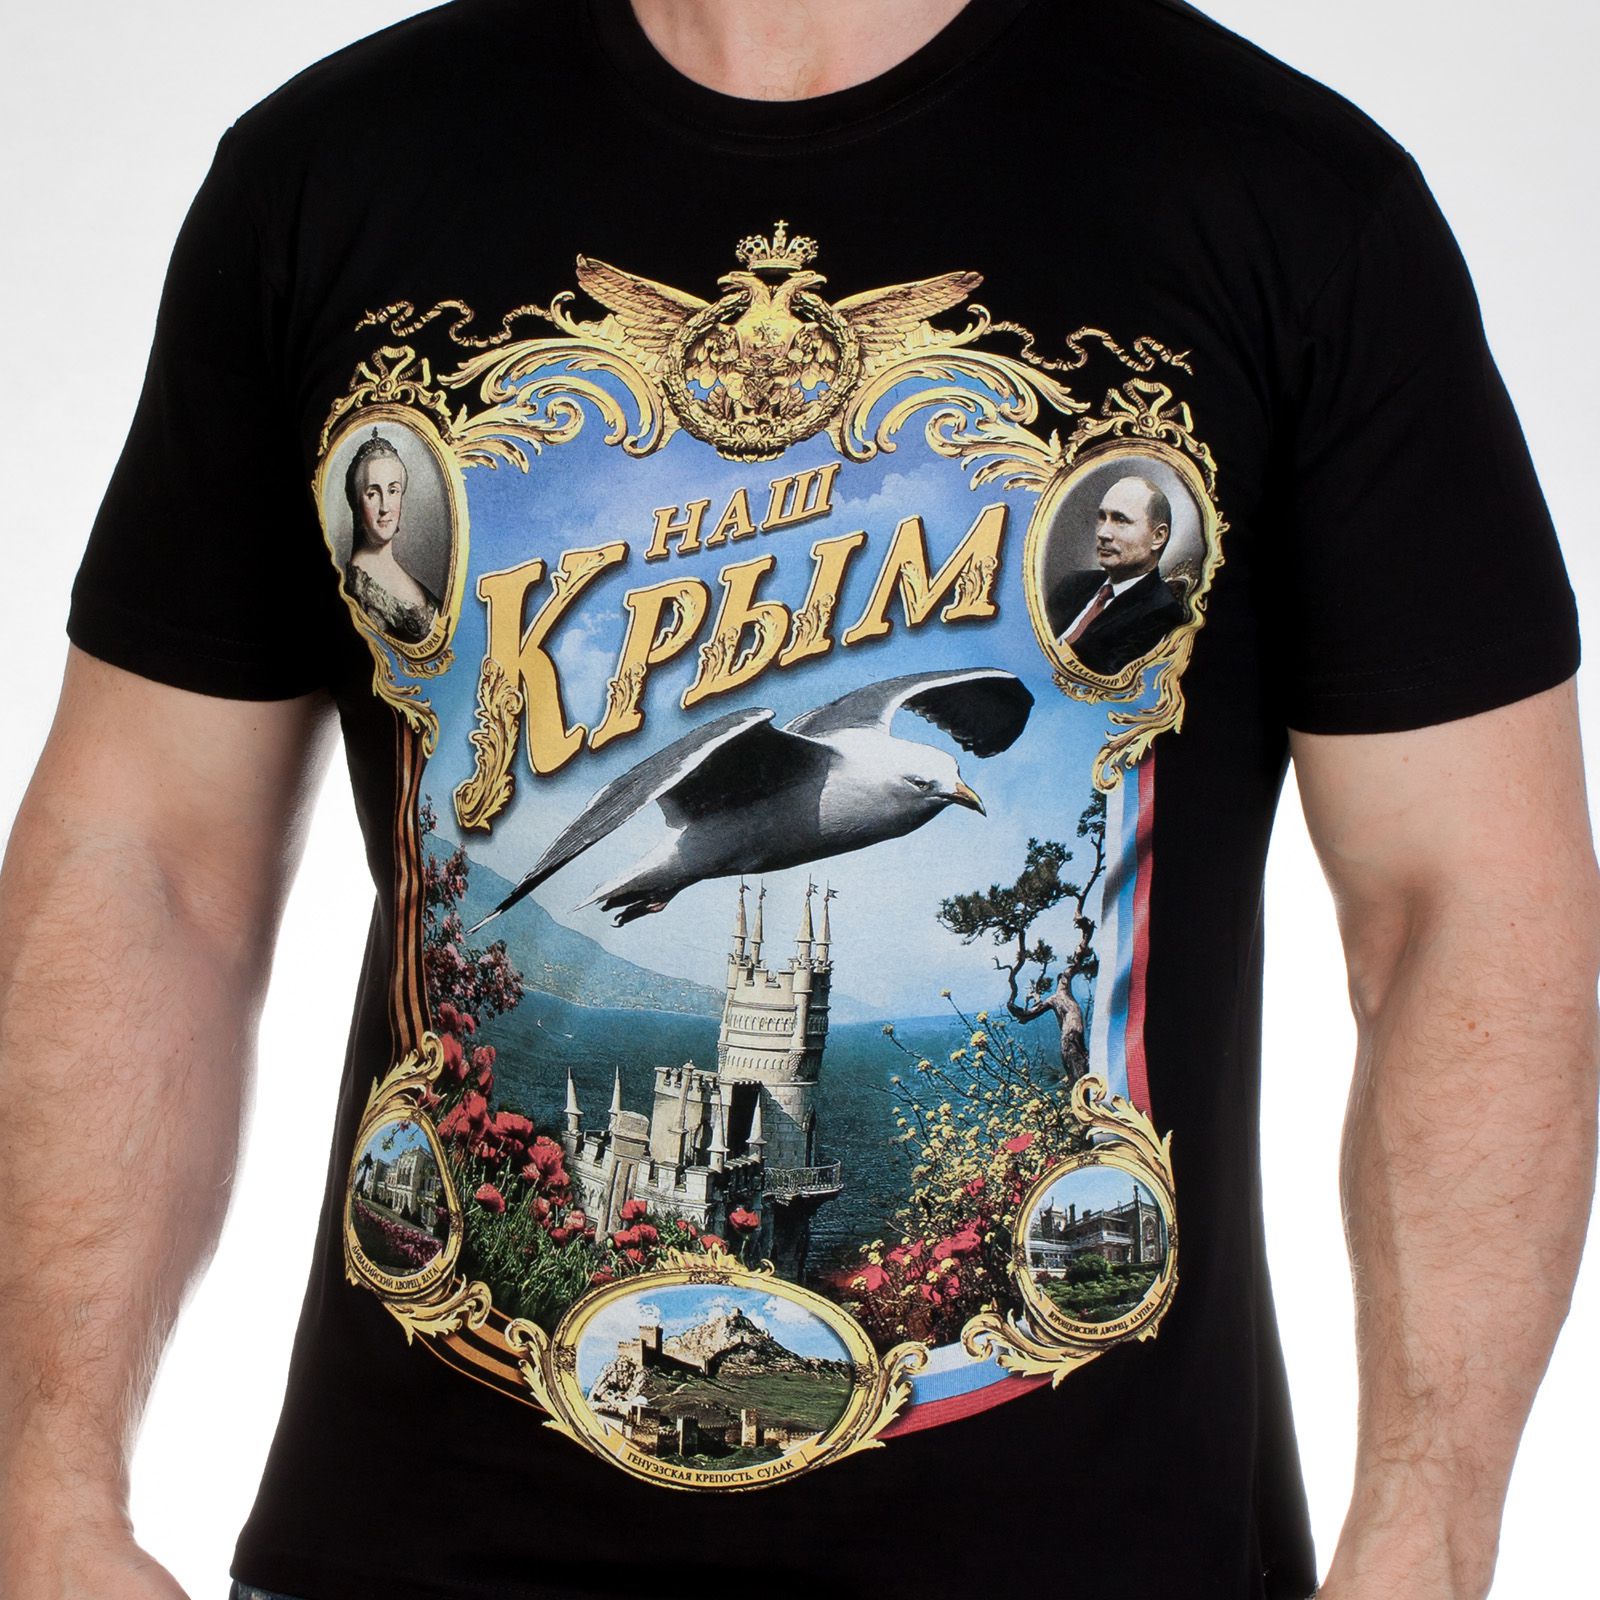 Купите футболки "Наш Крым" выгодно к летнему сезону